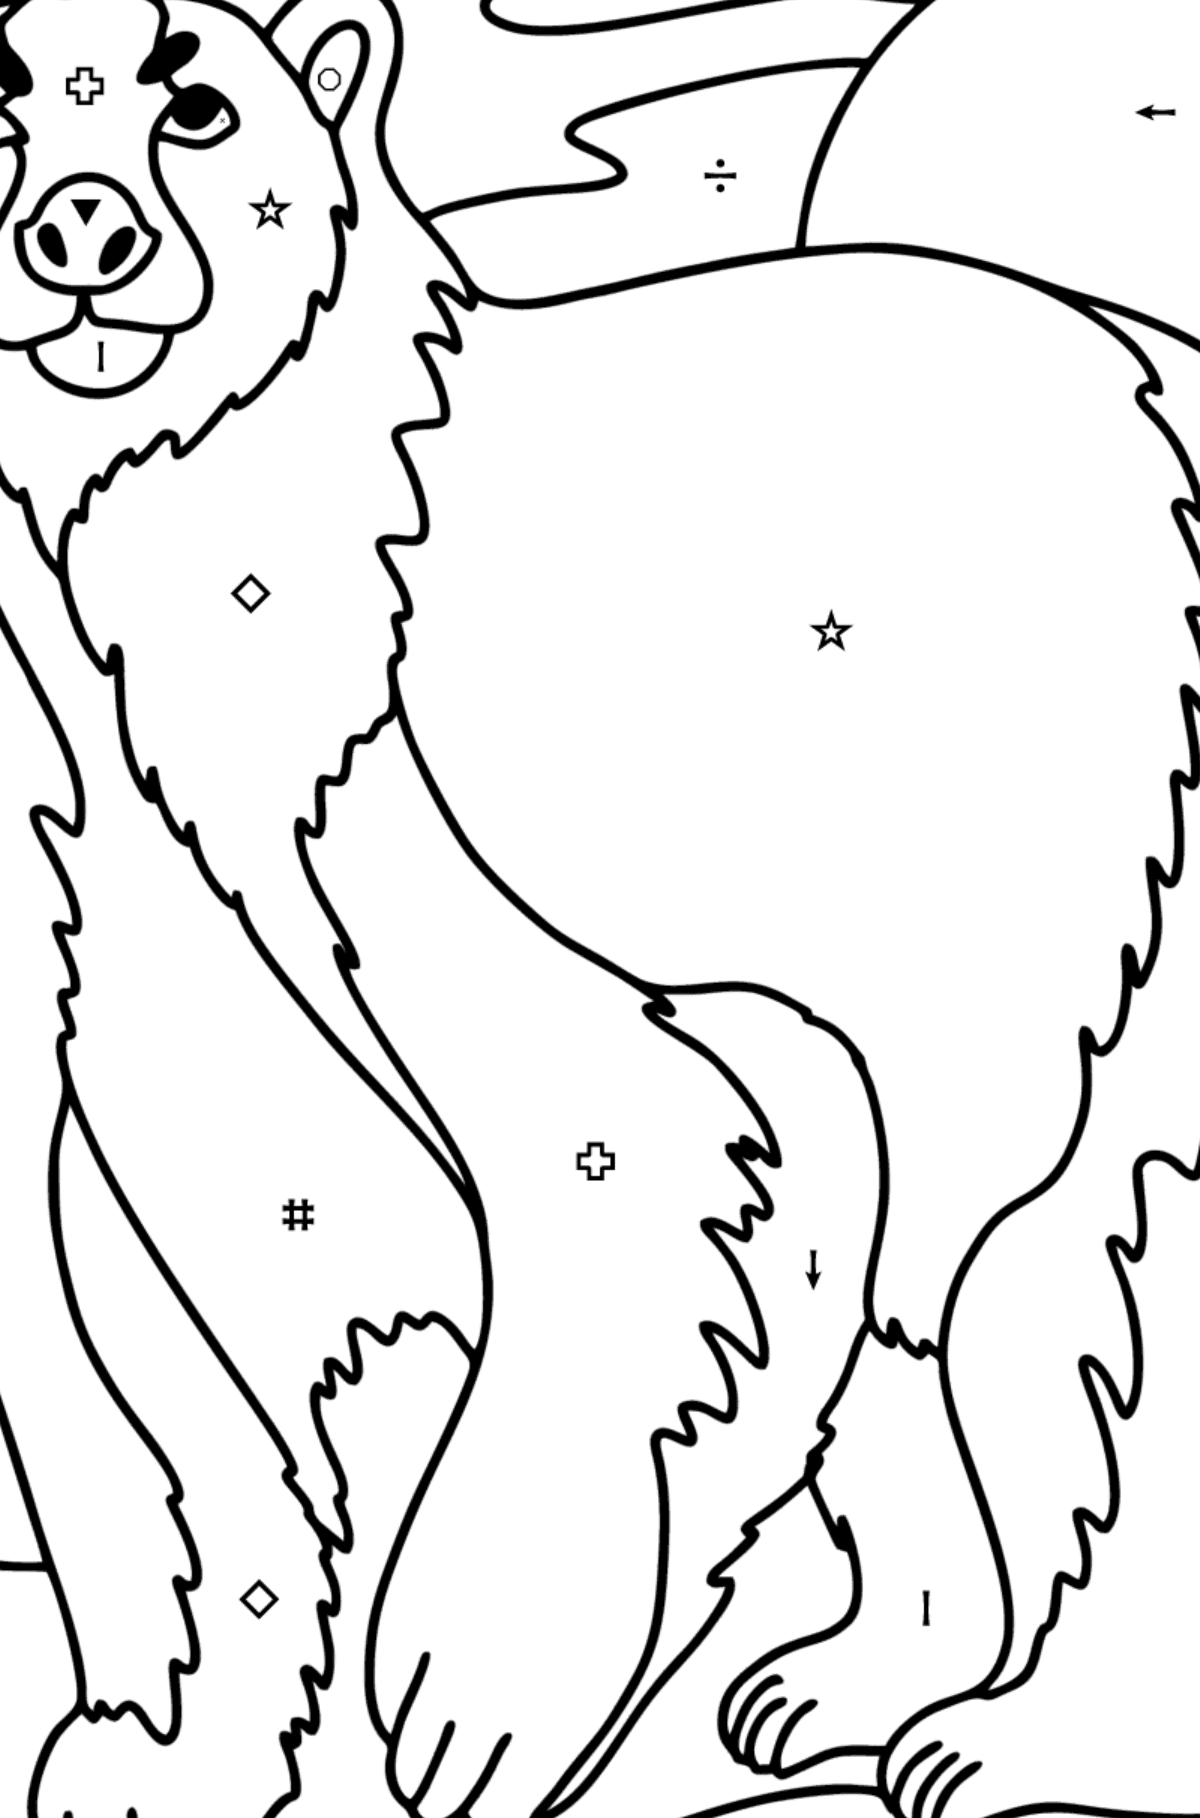 Målarbild isbjörn - Färgläggning efter symboler och av geometriska figurer För barn